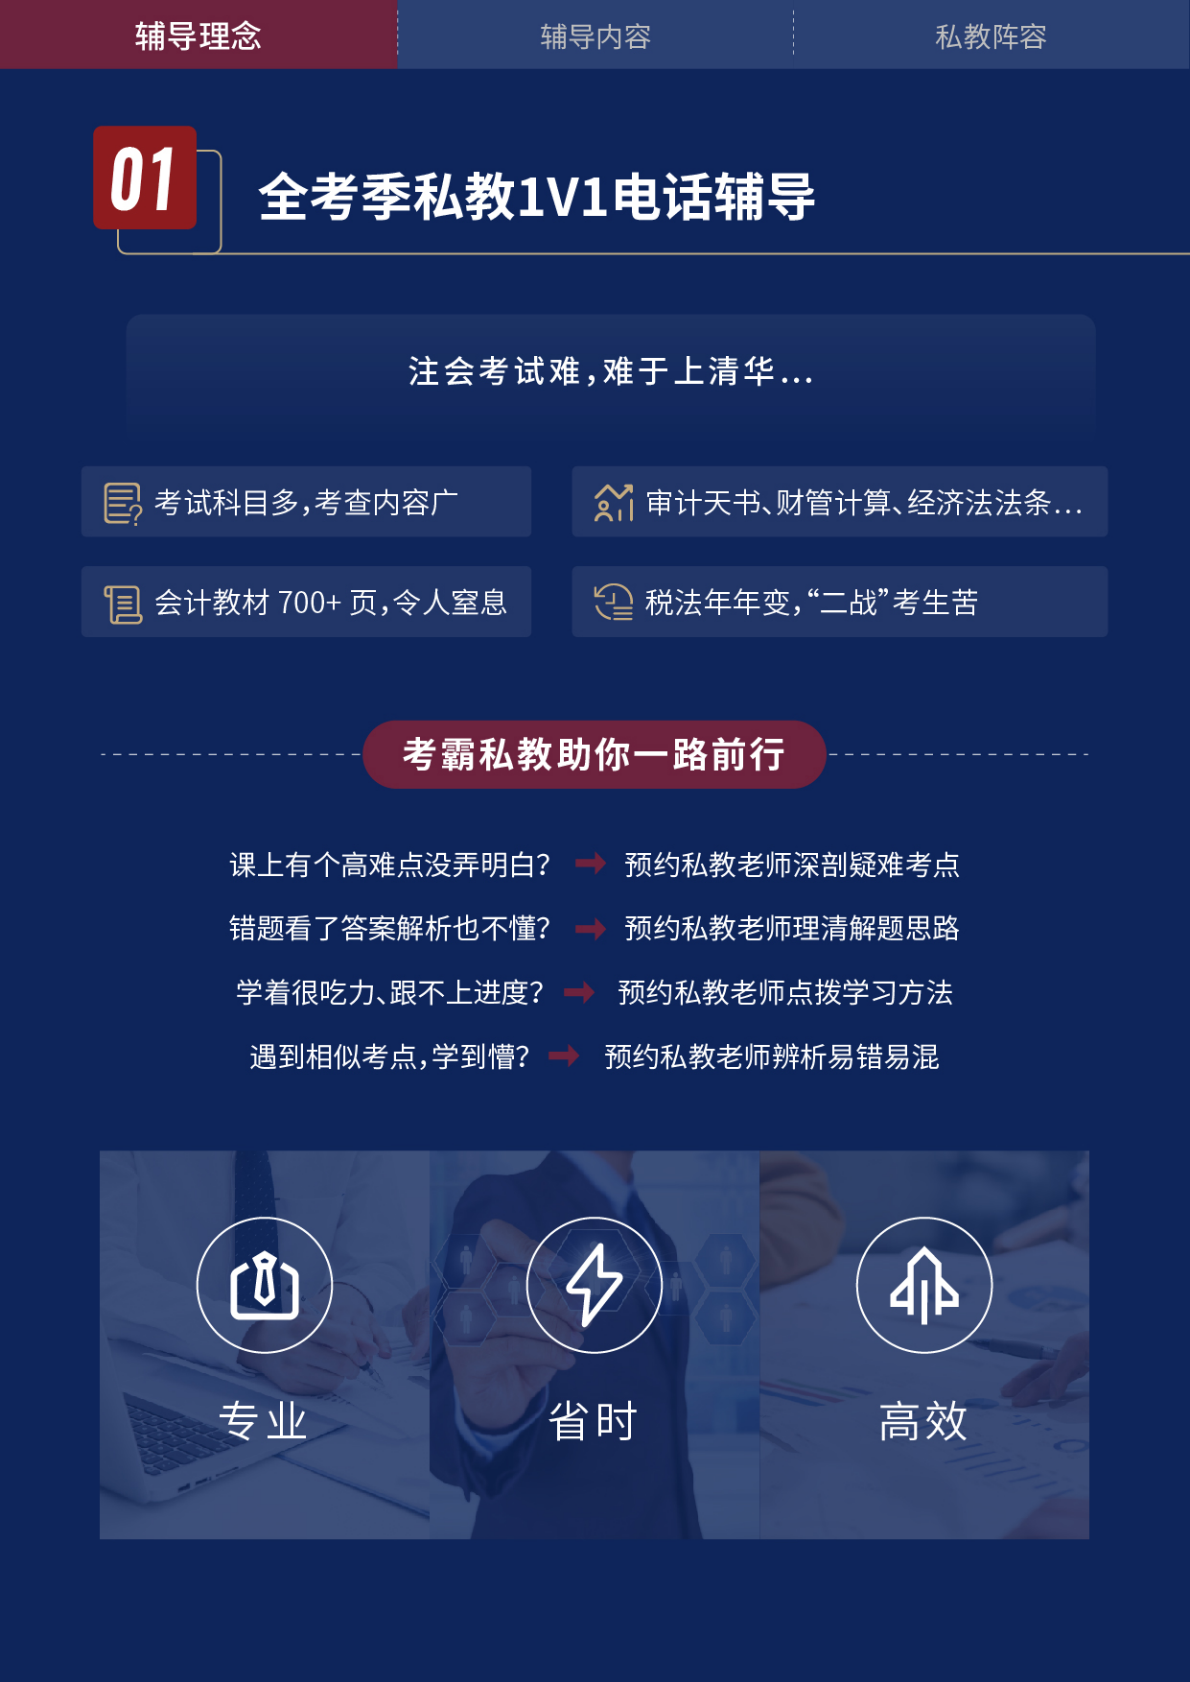 https://simg01.gaodunwangxiao.com/uploadfiles/product-center/202211/18/6c36a_20221118151146.png